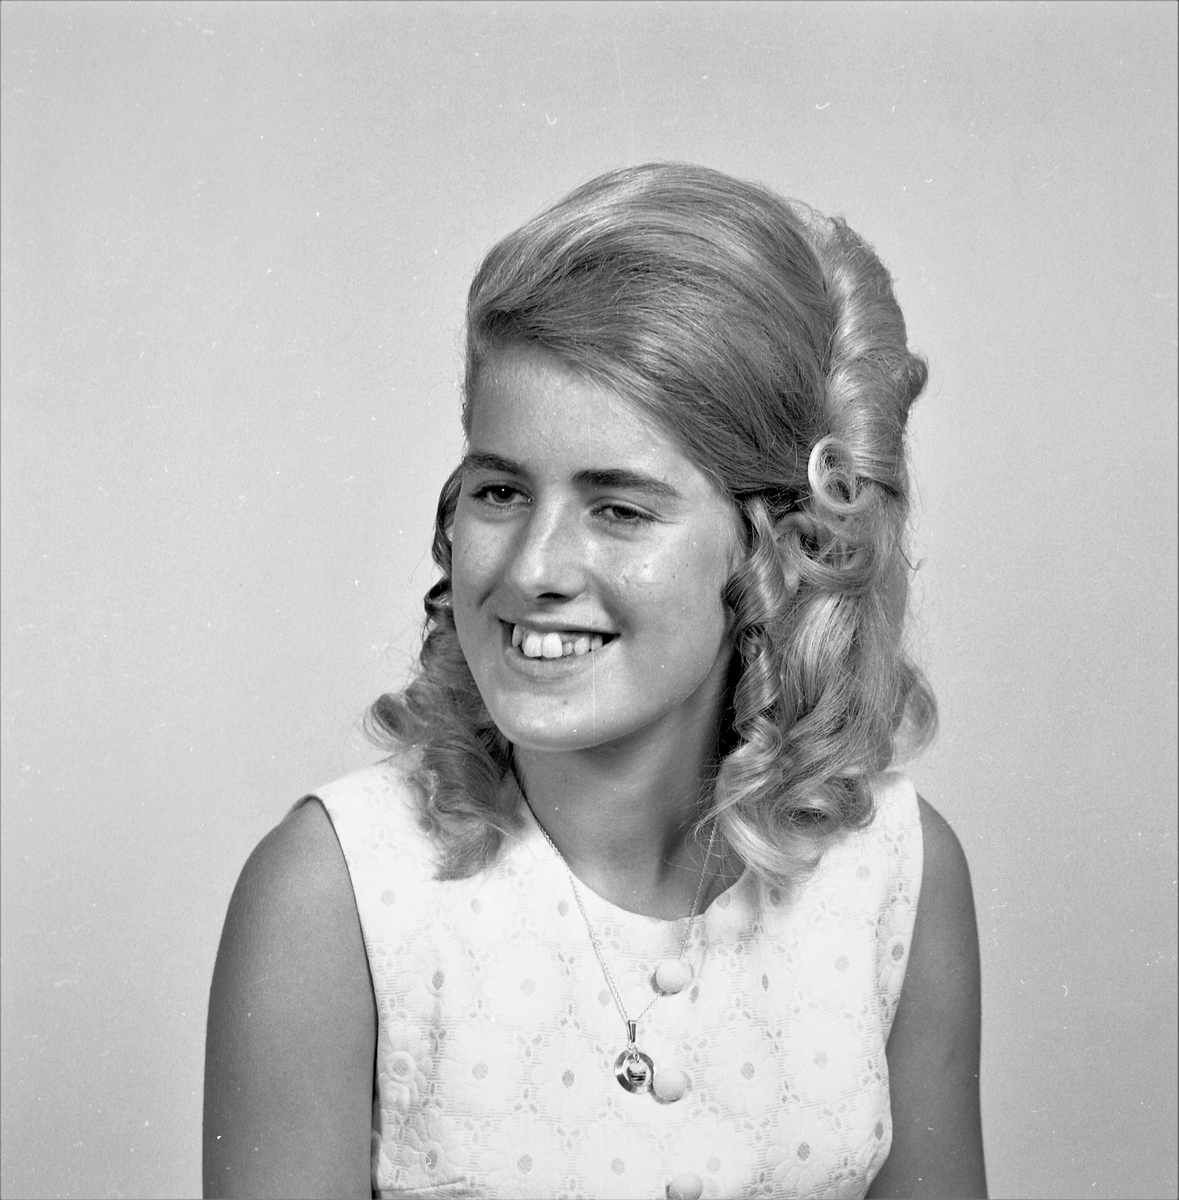 Portrett. Ung kvinne med langt lyst oppsatt hår iført lys sommerkjole med blomstermønster. Smykke i kjede om halsen. Bestilt av Solveig Hansen. 5523 Smørsund.